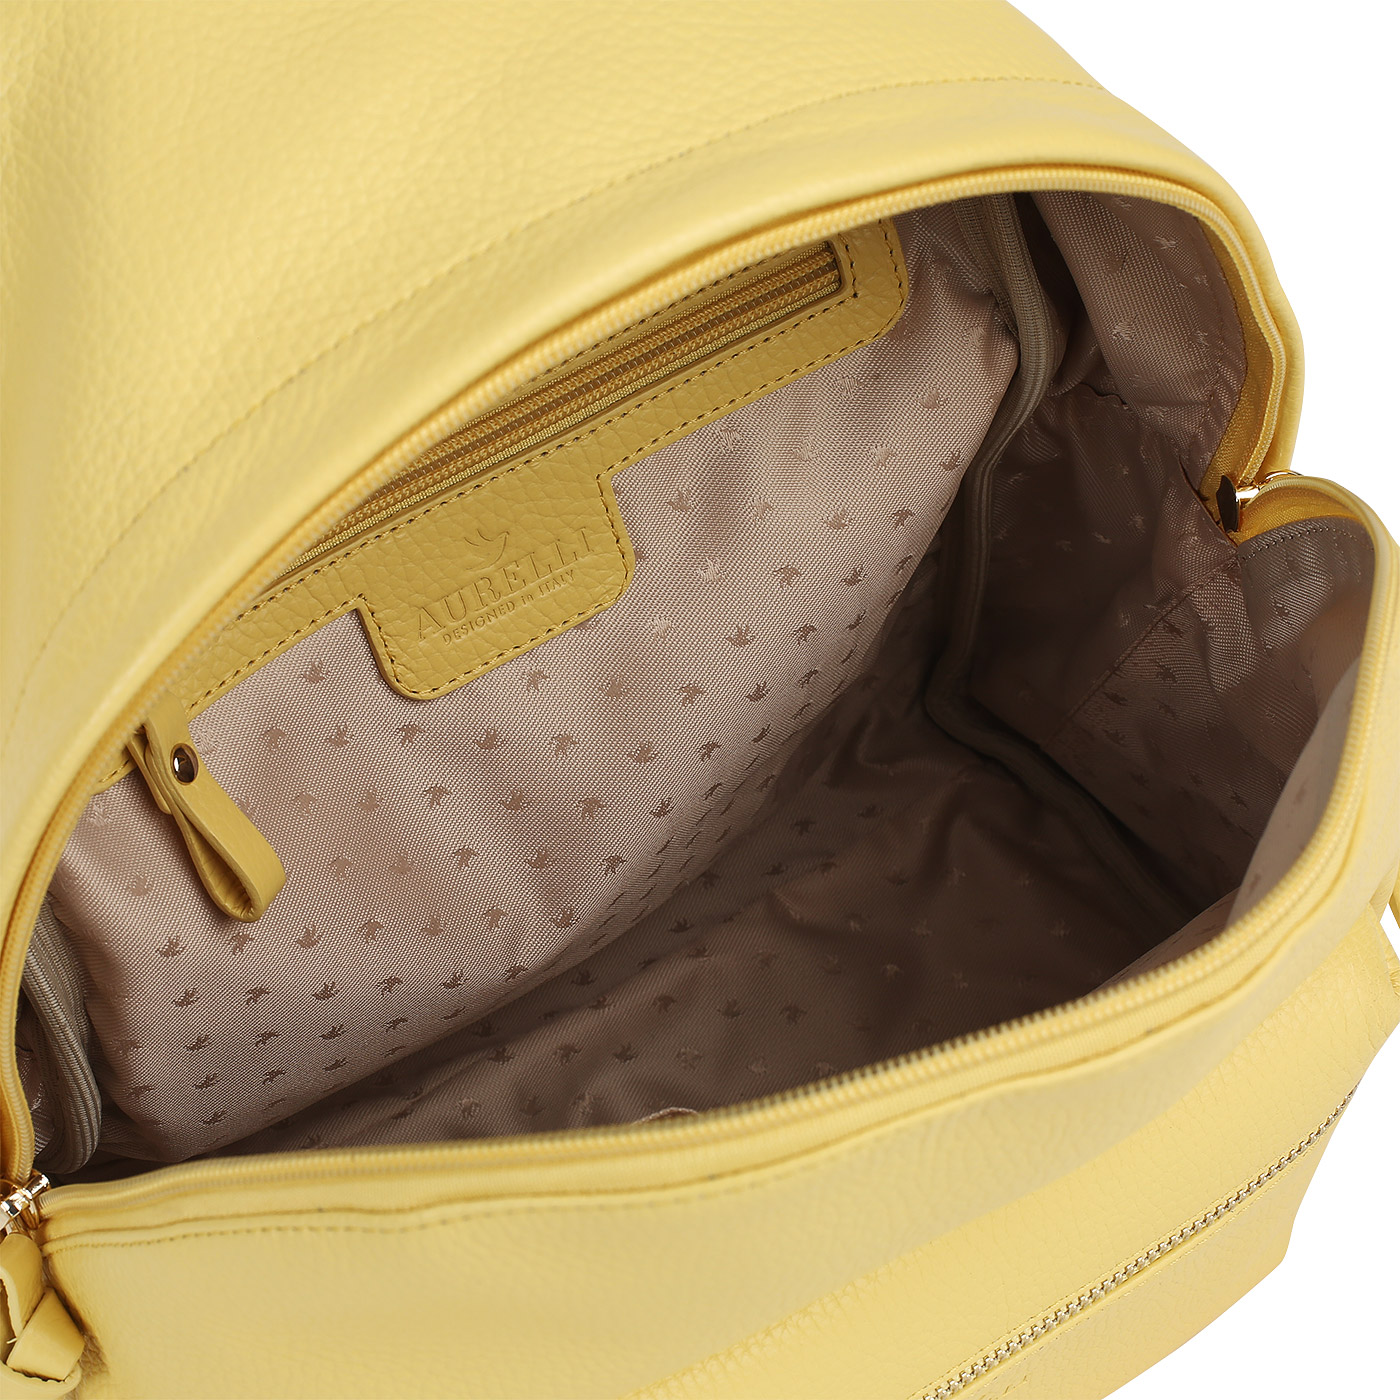 Кожаный рюкзак Aurelli Soft